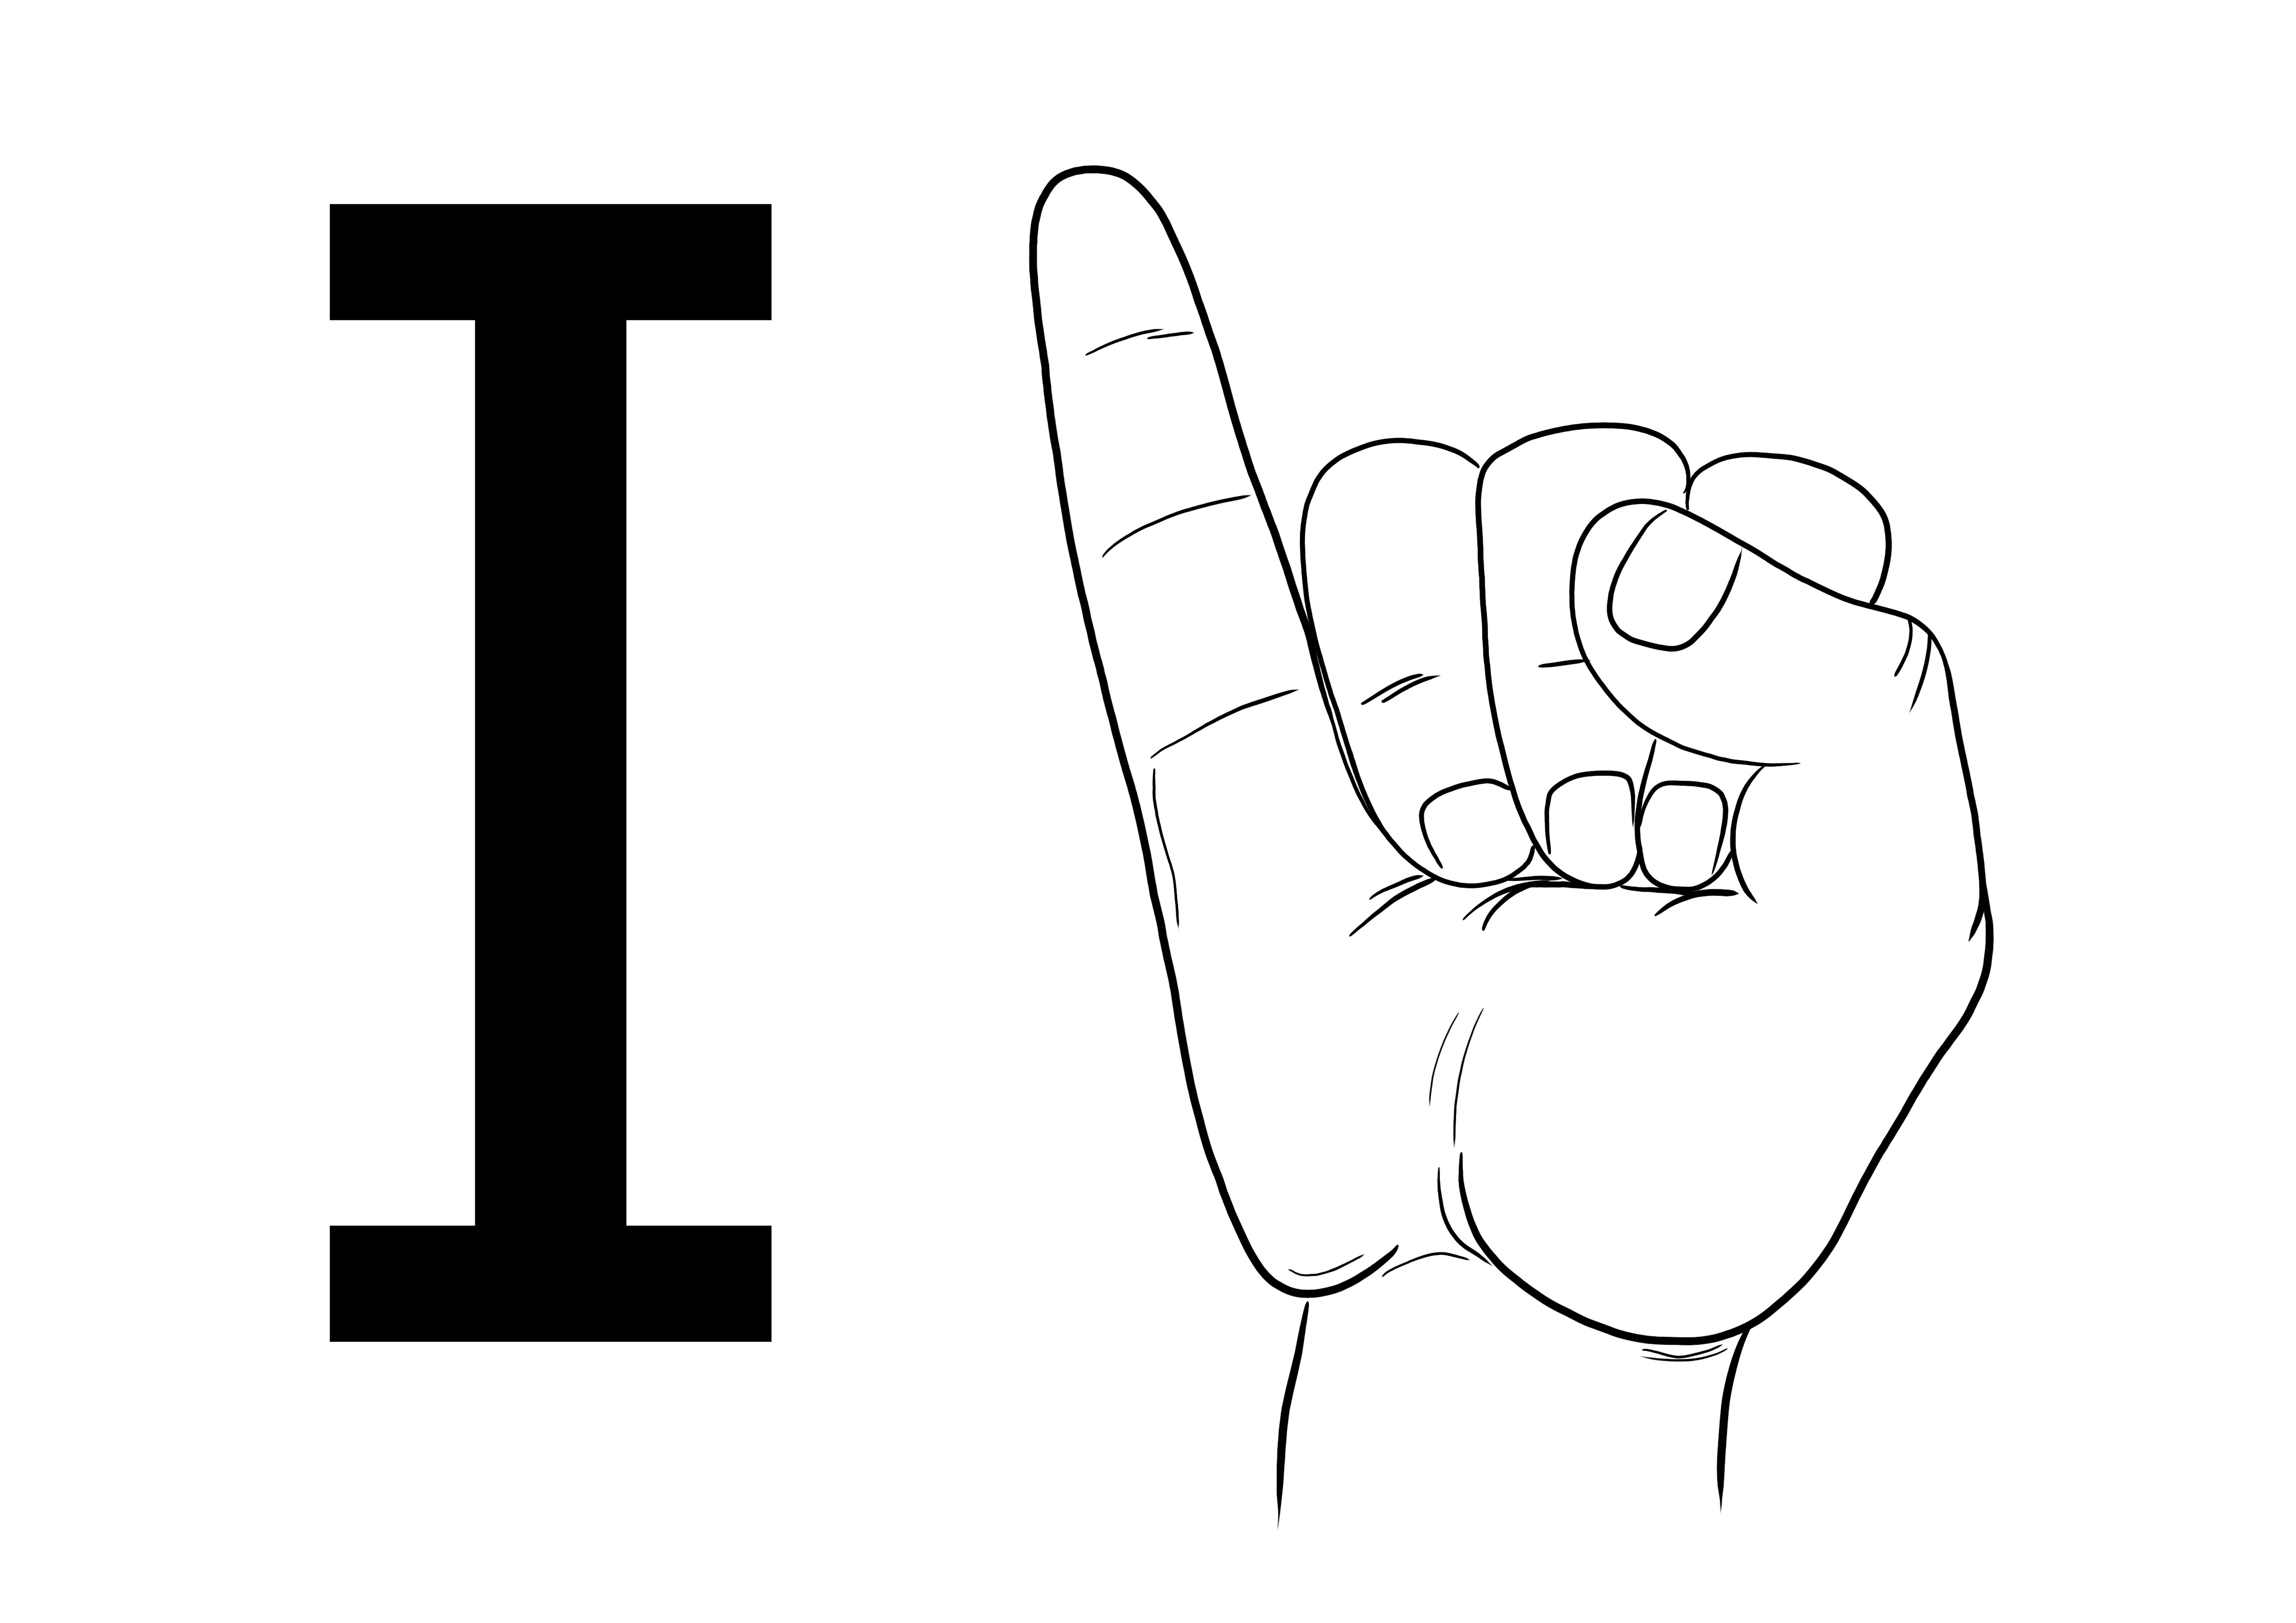 Halaman mewarnai gratis untuk mencetak atau mengunduh ASL Sign Language Letter I untuk mempelajari alfabet